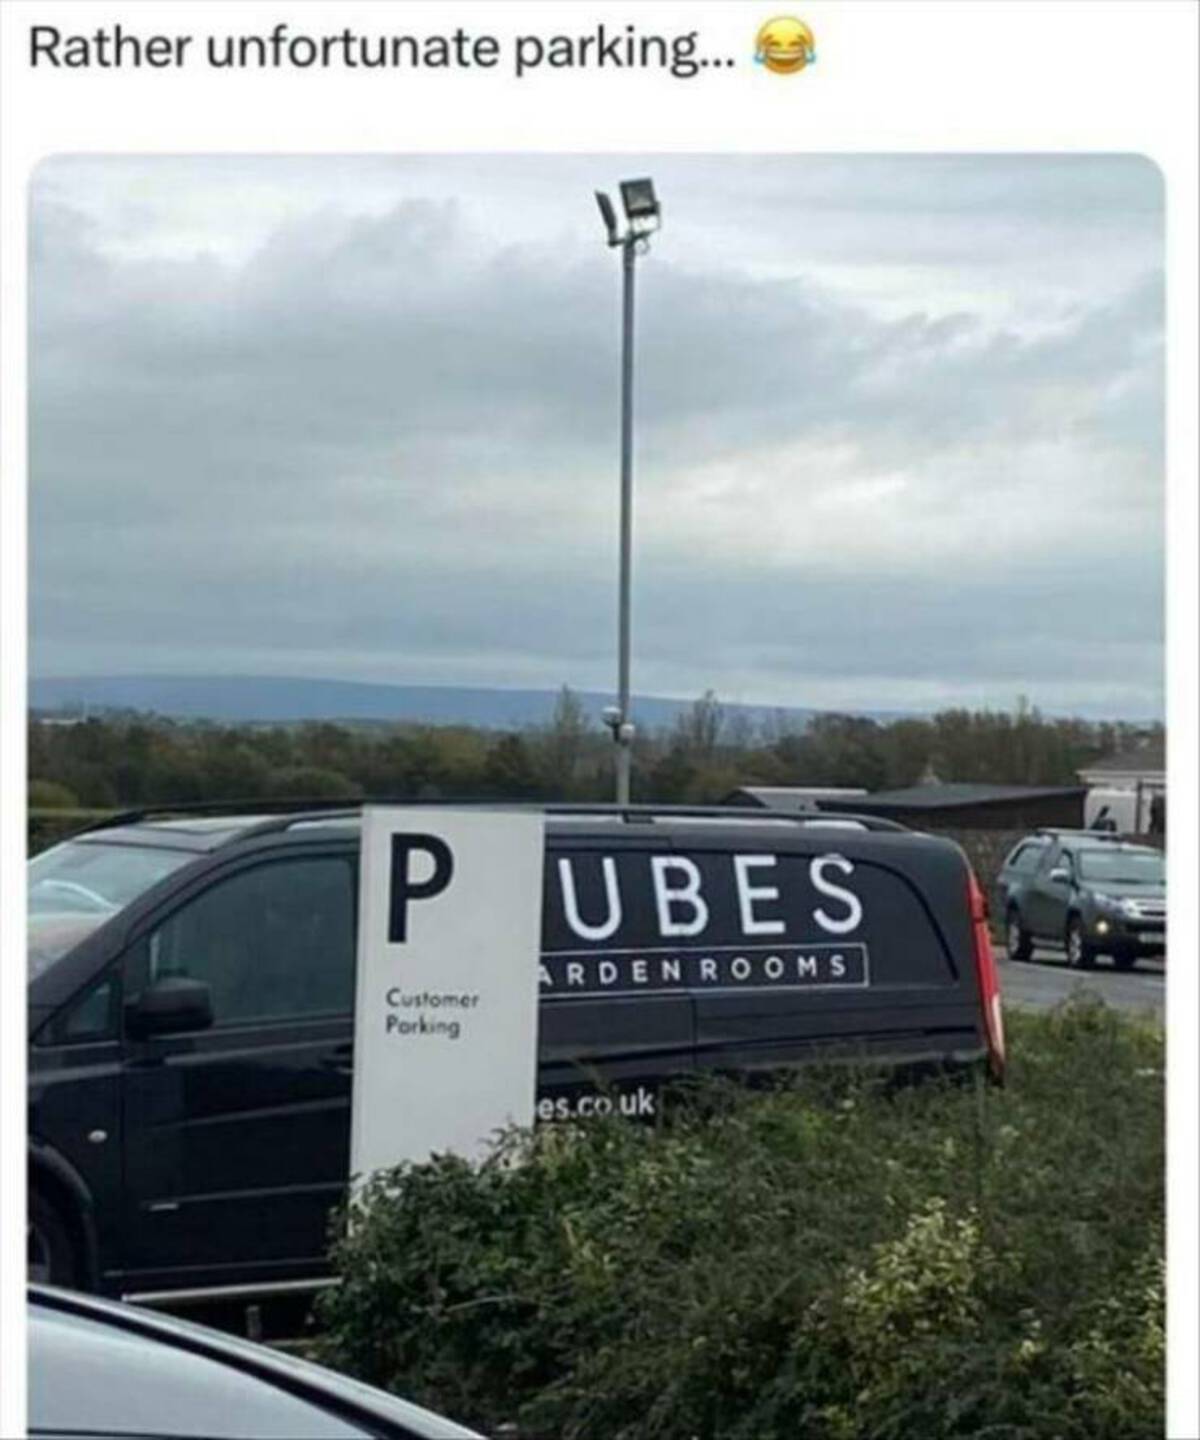 banner - Rather unfortunate parking... Pubes Customer Parking Ardenrooms es.co.uk